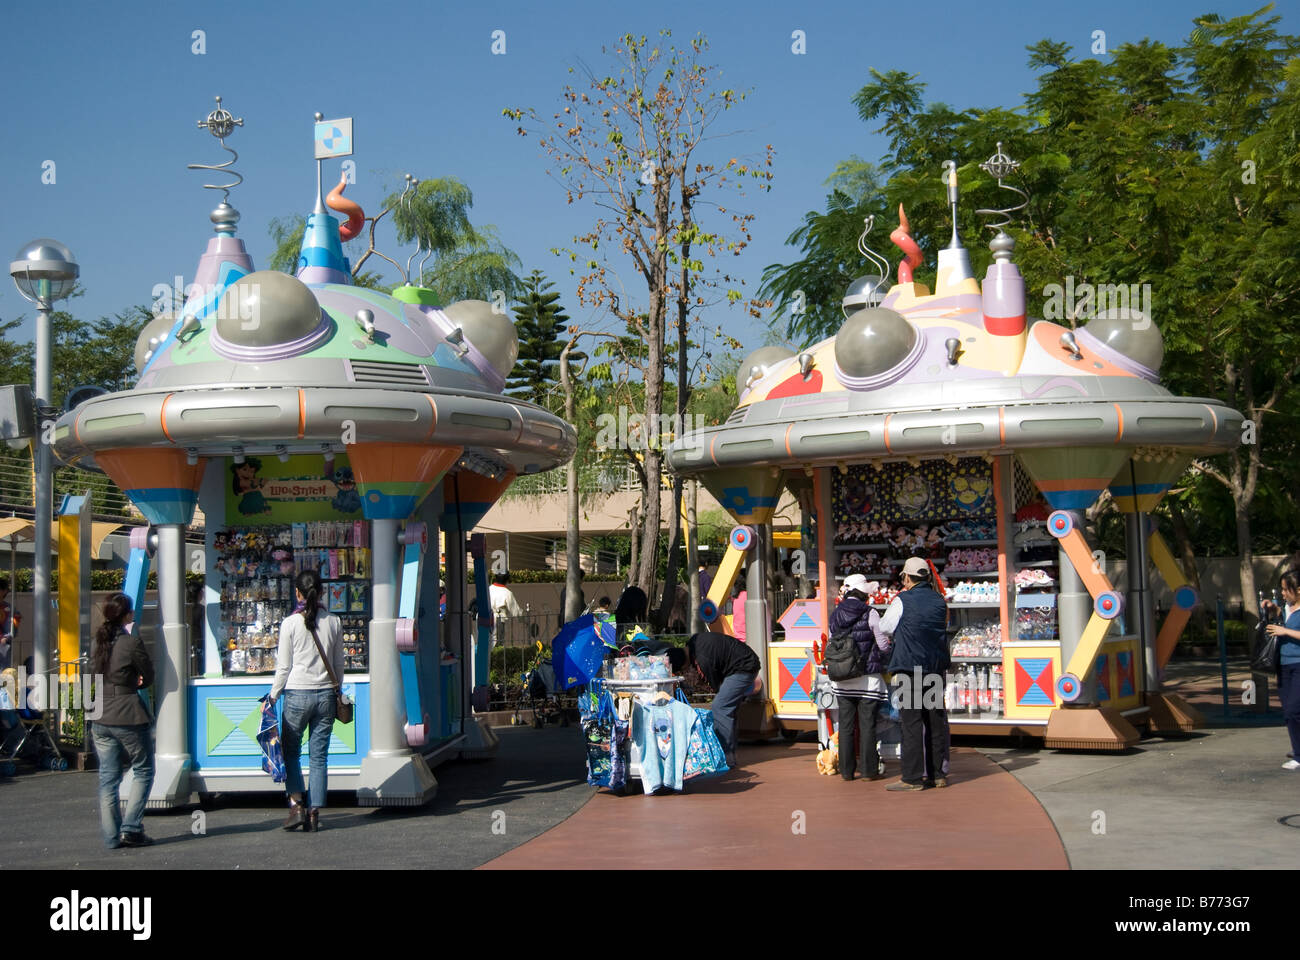 Bancarelle di souvenir, Tomorrowland, Hong Kong Disneyland Resort, l'Isola di Lantau, Hong Kong, Repubblica Popolare di Cina Foto Stock